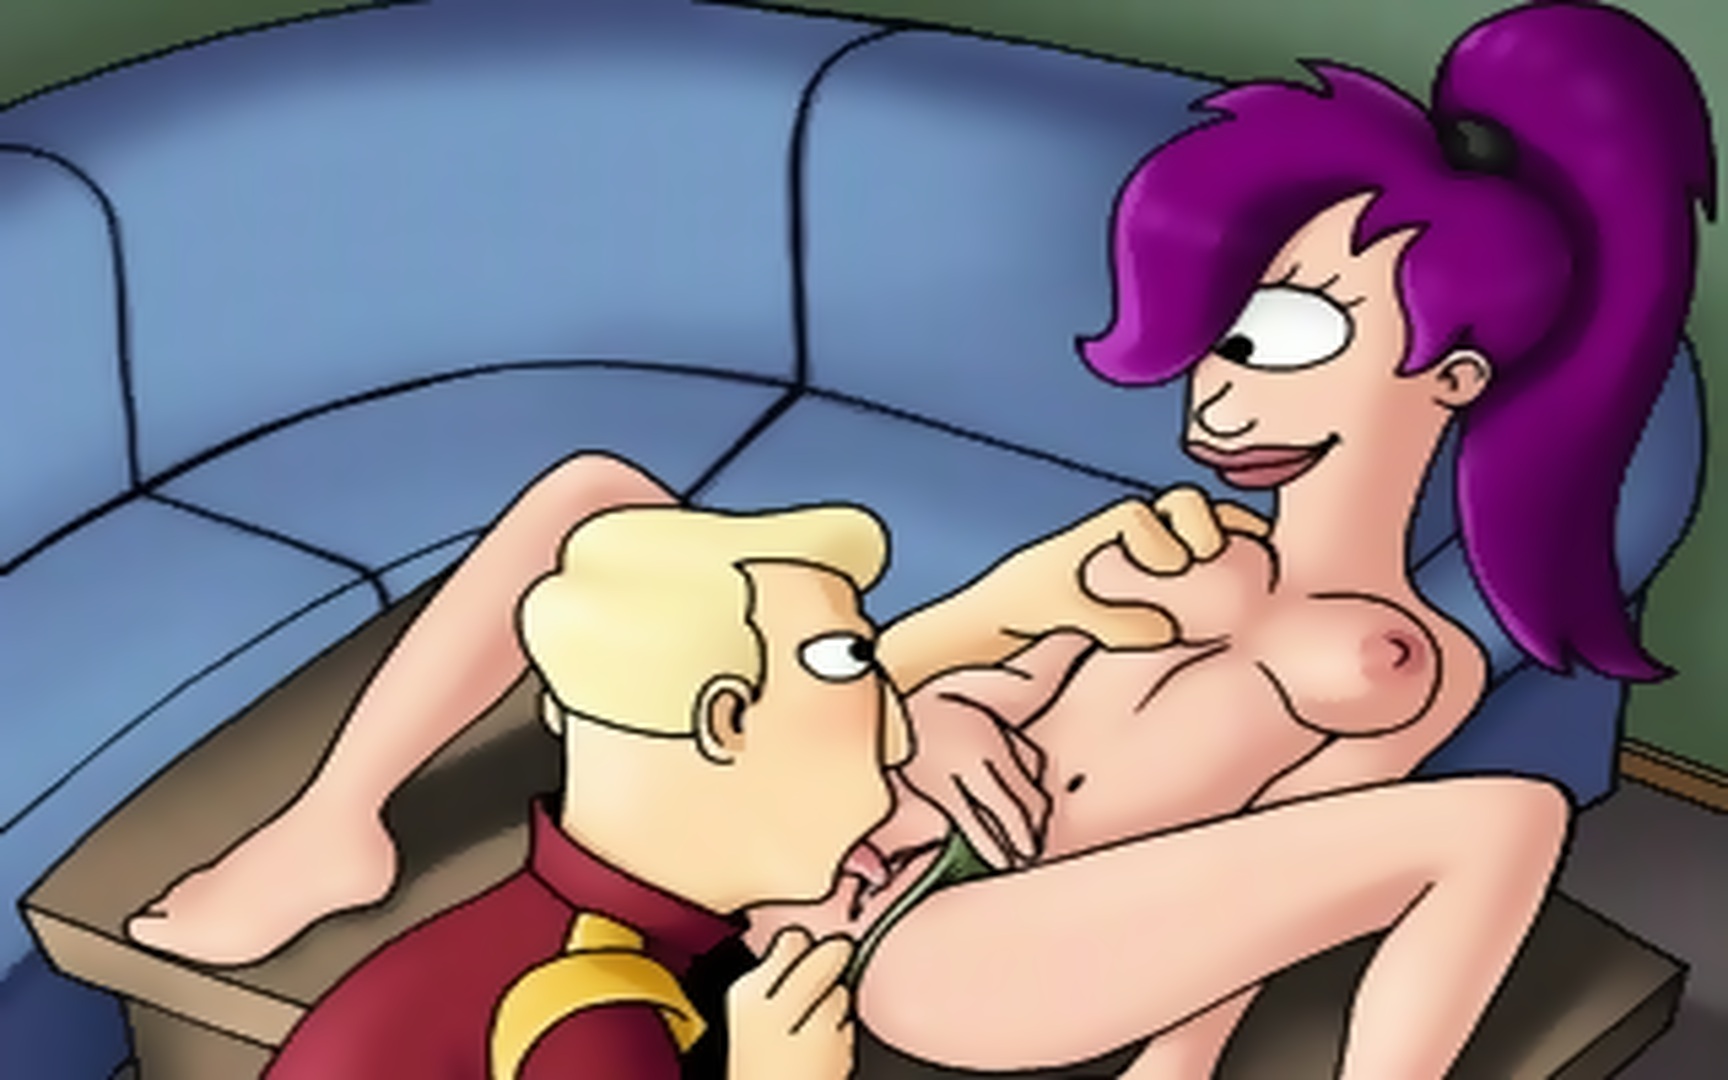 Flintstones Shemale Porn - Cartoon Porn Insanity With Flintstones, American Dad Etc - EPORNER